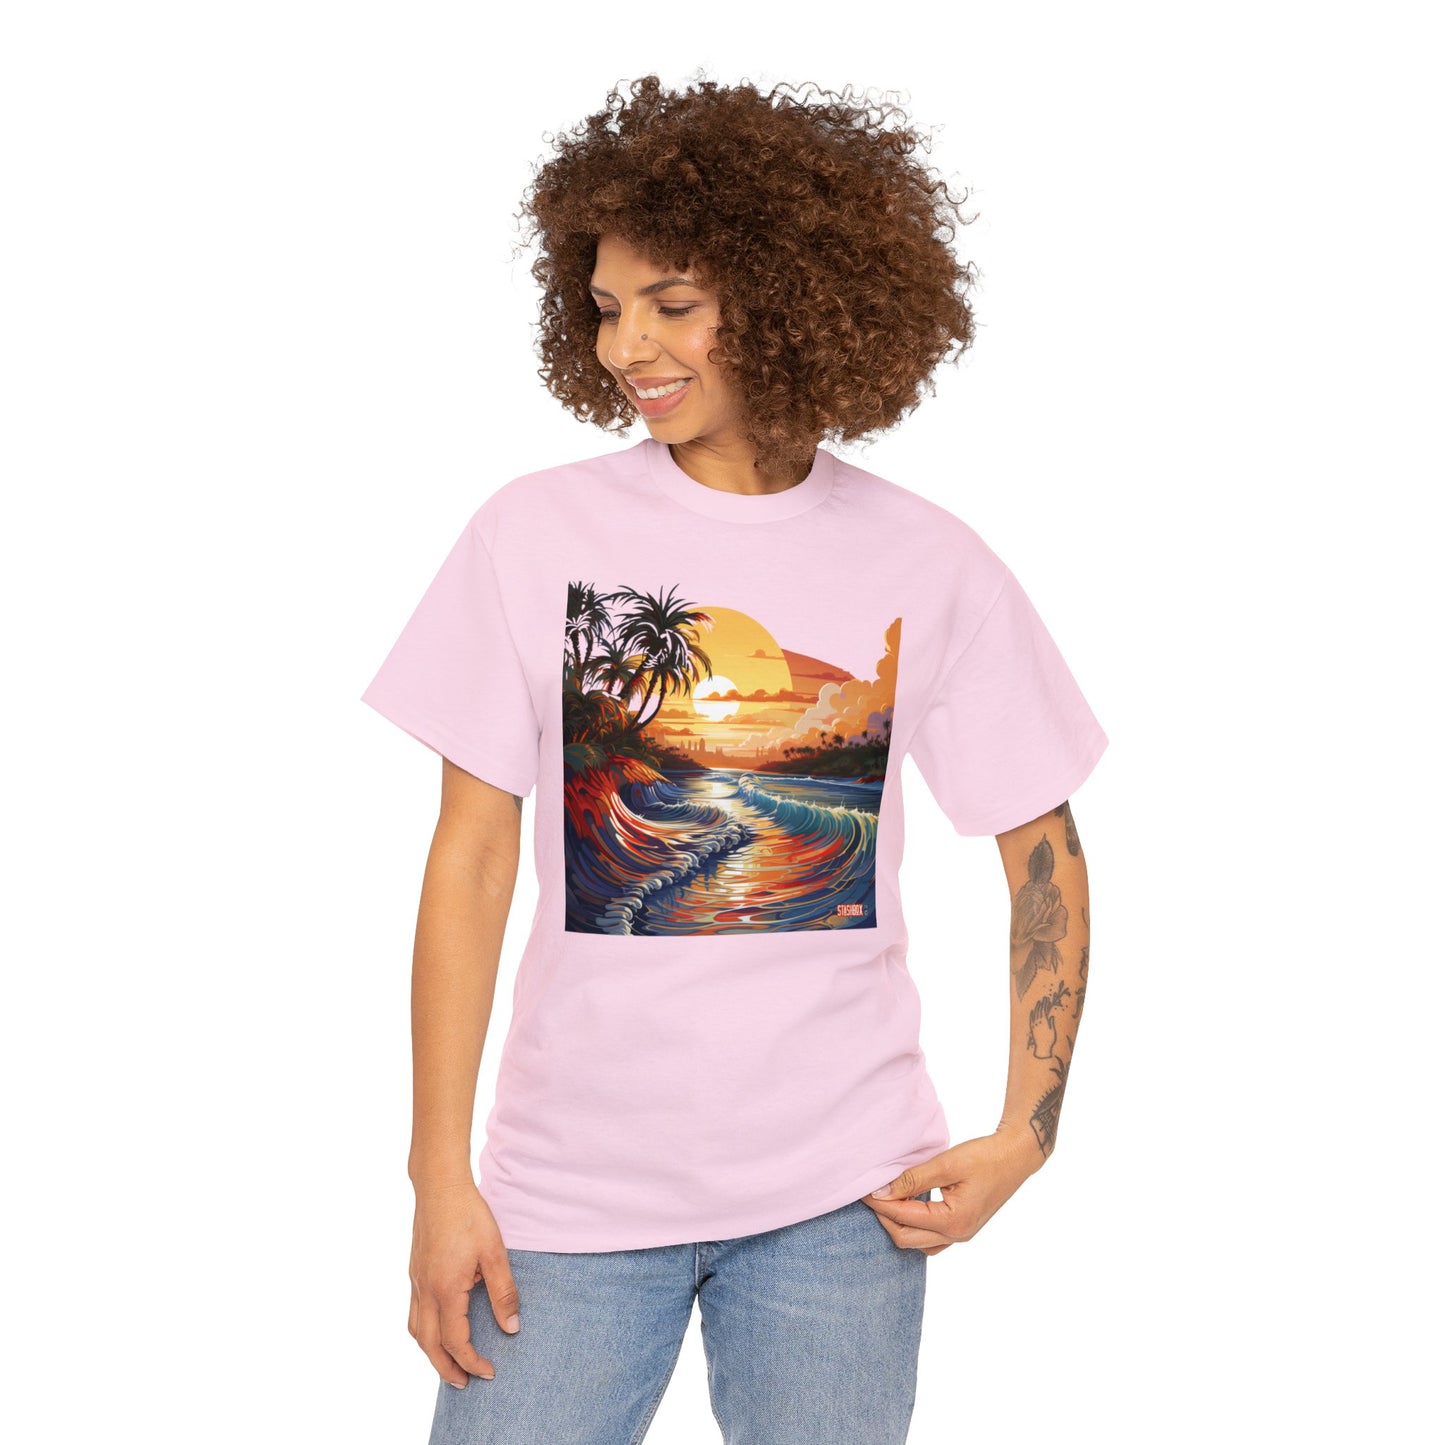 Stunning Sunset Beach Waves Art - Unisex Heavy Cotton Tee - Waves Design #057